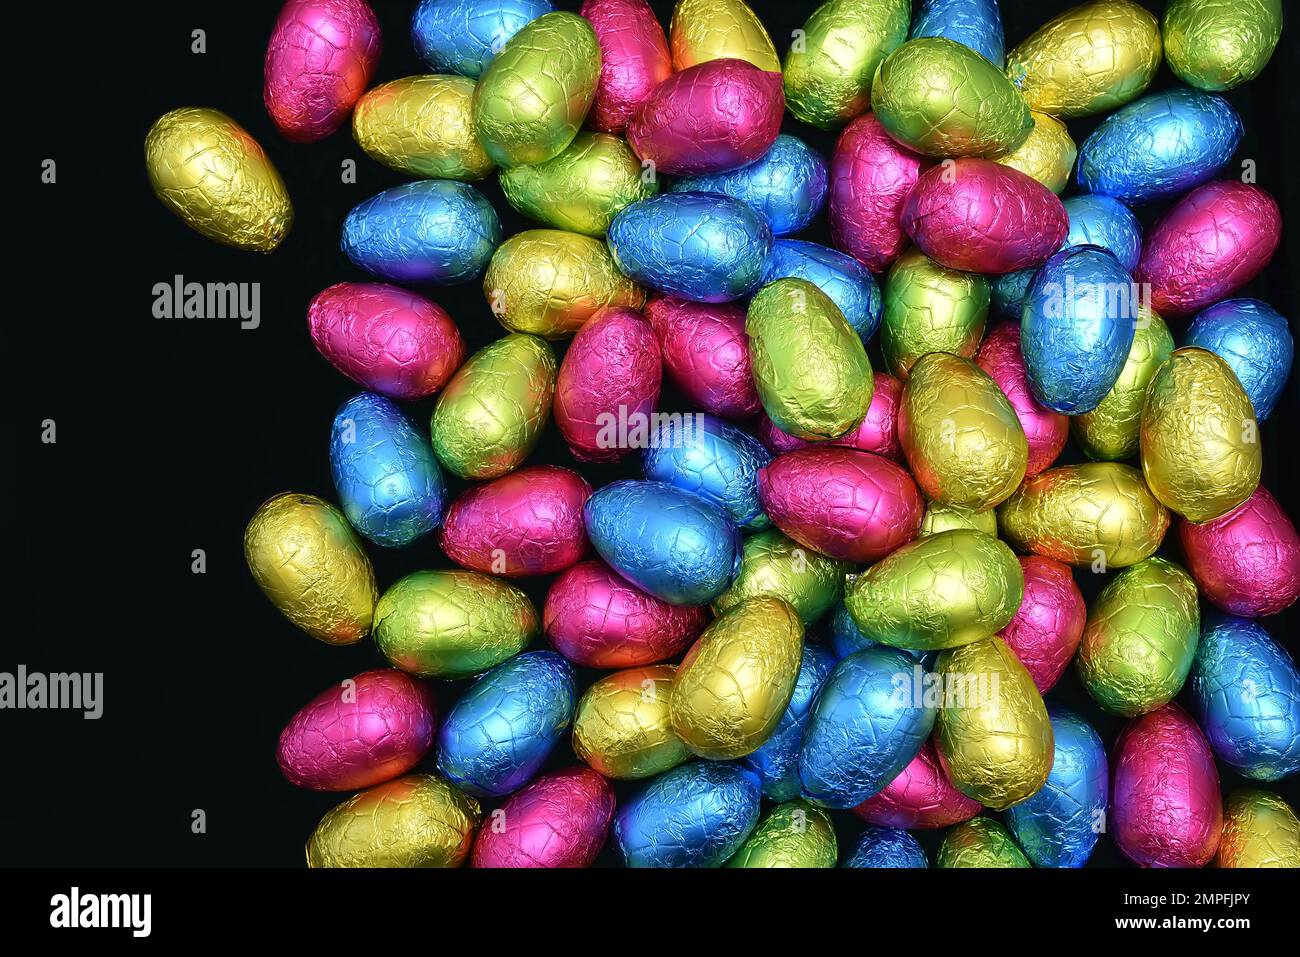 Pila de varios colores y diferentes tamaños de huevos de pascua de chocolate envueltos en papel de aluminio en rosa, azul, amarillo y verde lima sobre un fondo negro. Foto de stock